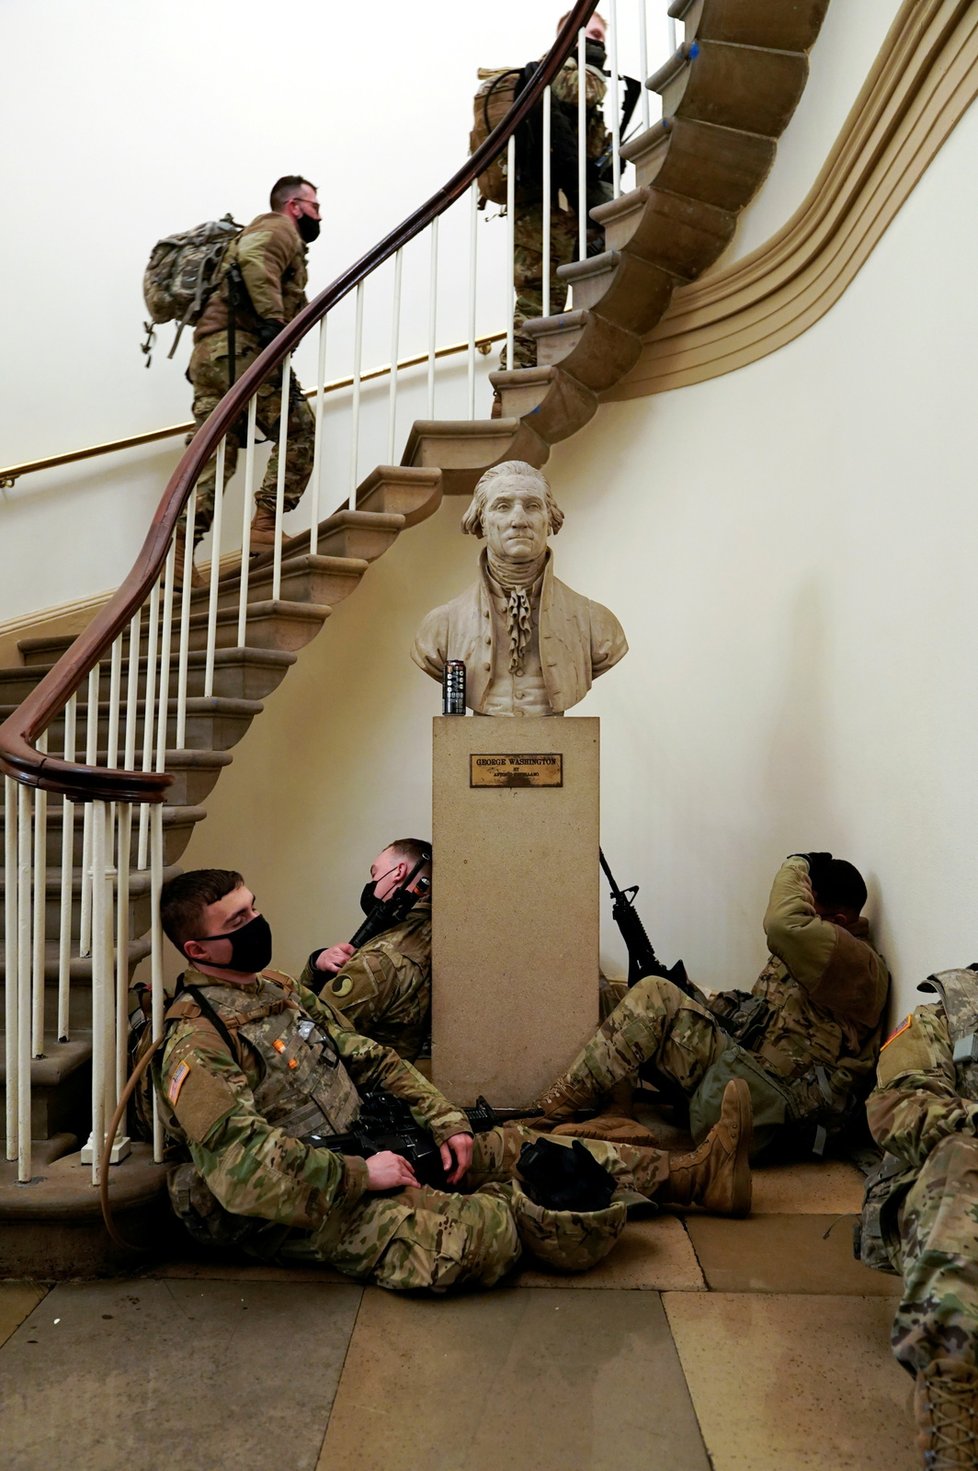 Vojáci Národní gardy před a v Kapitolu před jednáním o impeachmentu (13. 01. 2021)